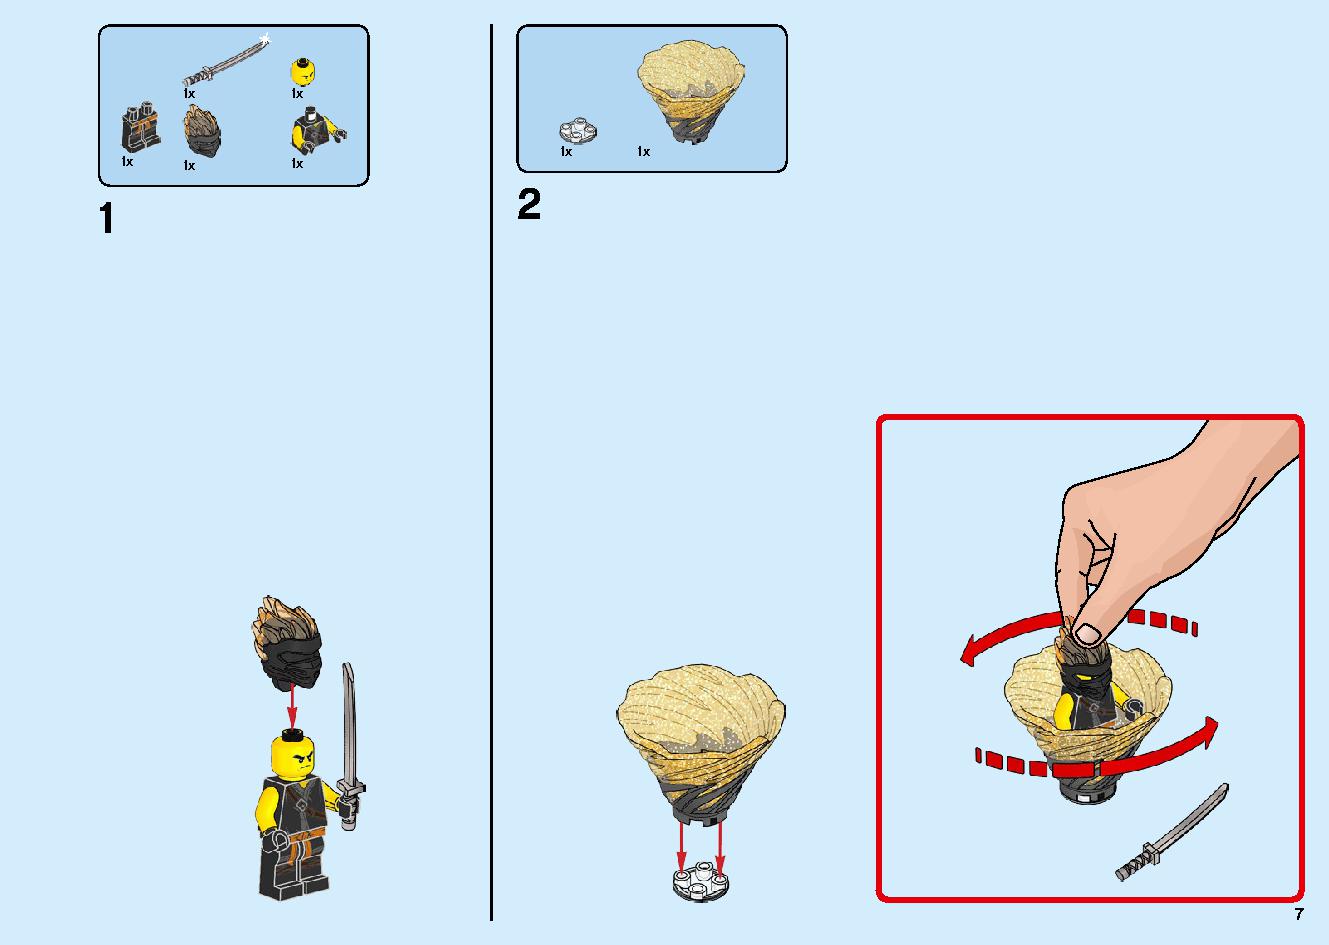 陸上戦艦バウンティ号 70677 レゴの商品情報 レゴの説明書・組立方法 7 page